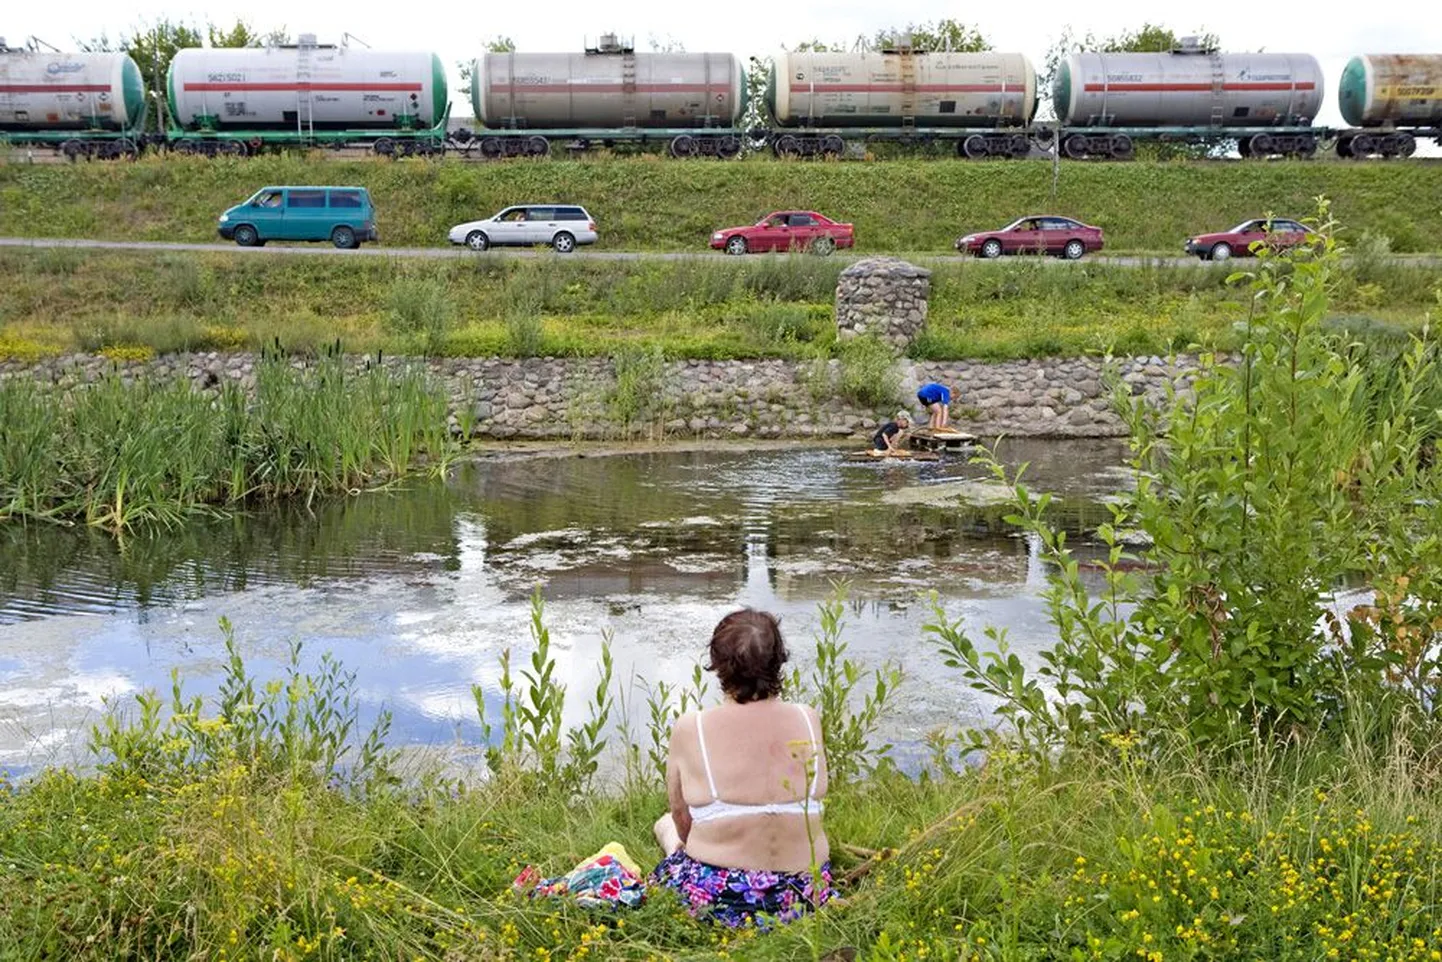 Oluline raudteesõlm Daugavpils on töö tõttu linna elama toonud hulga venelasi, kellest osa arvab, et Krimmi eeskujul referendum korraldada pole üldse halb idee.